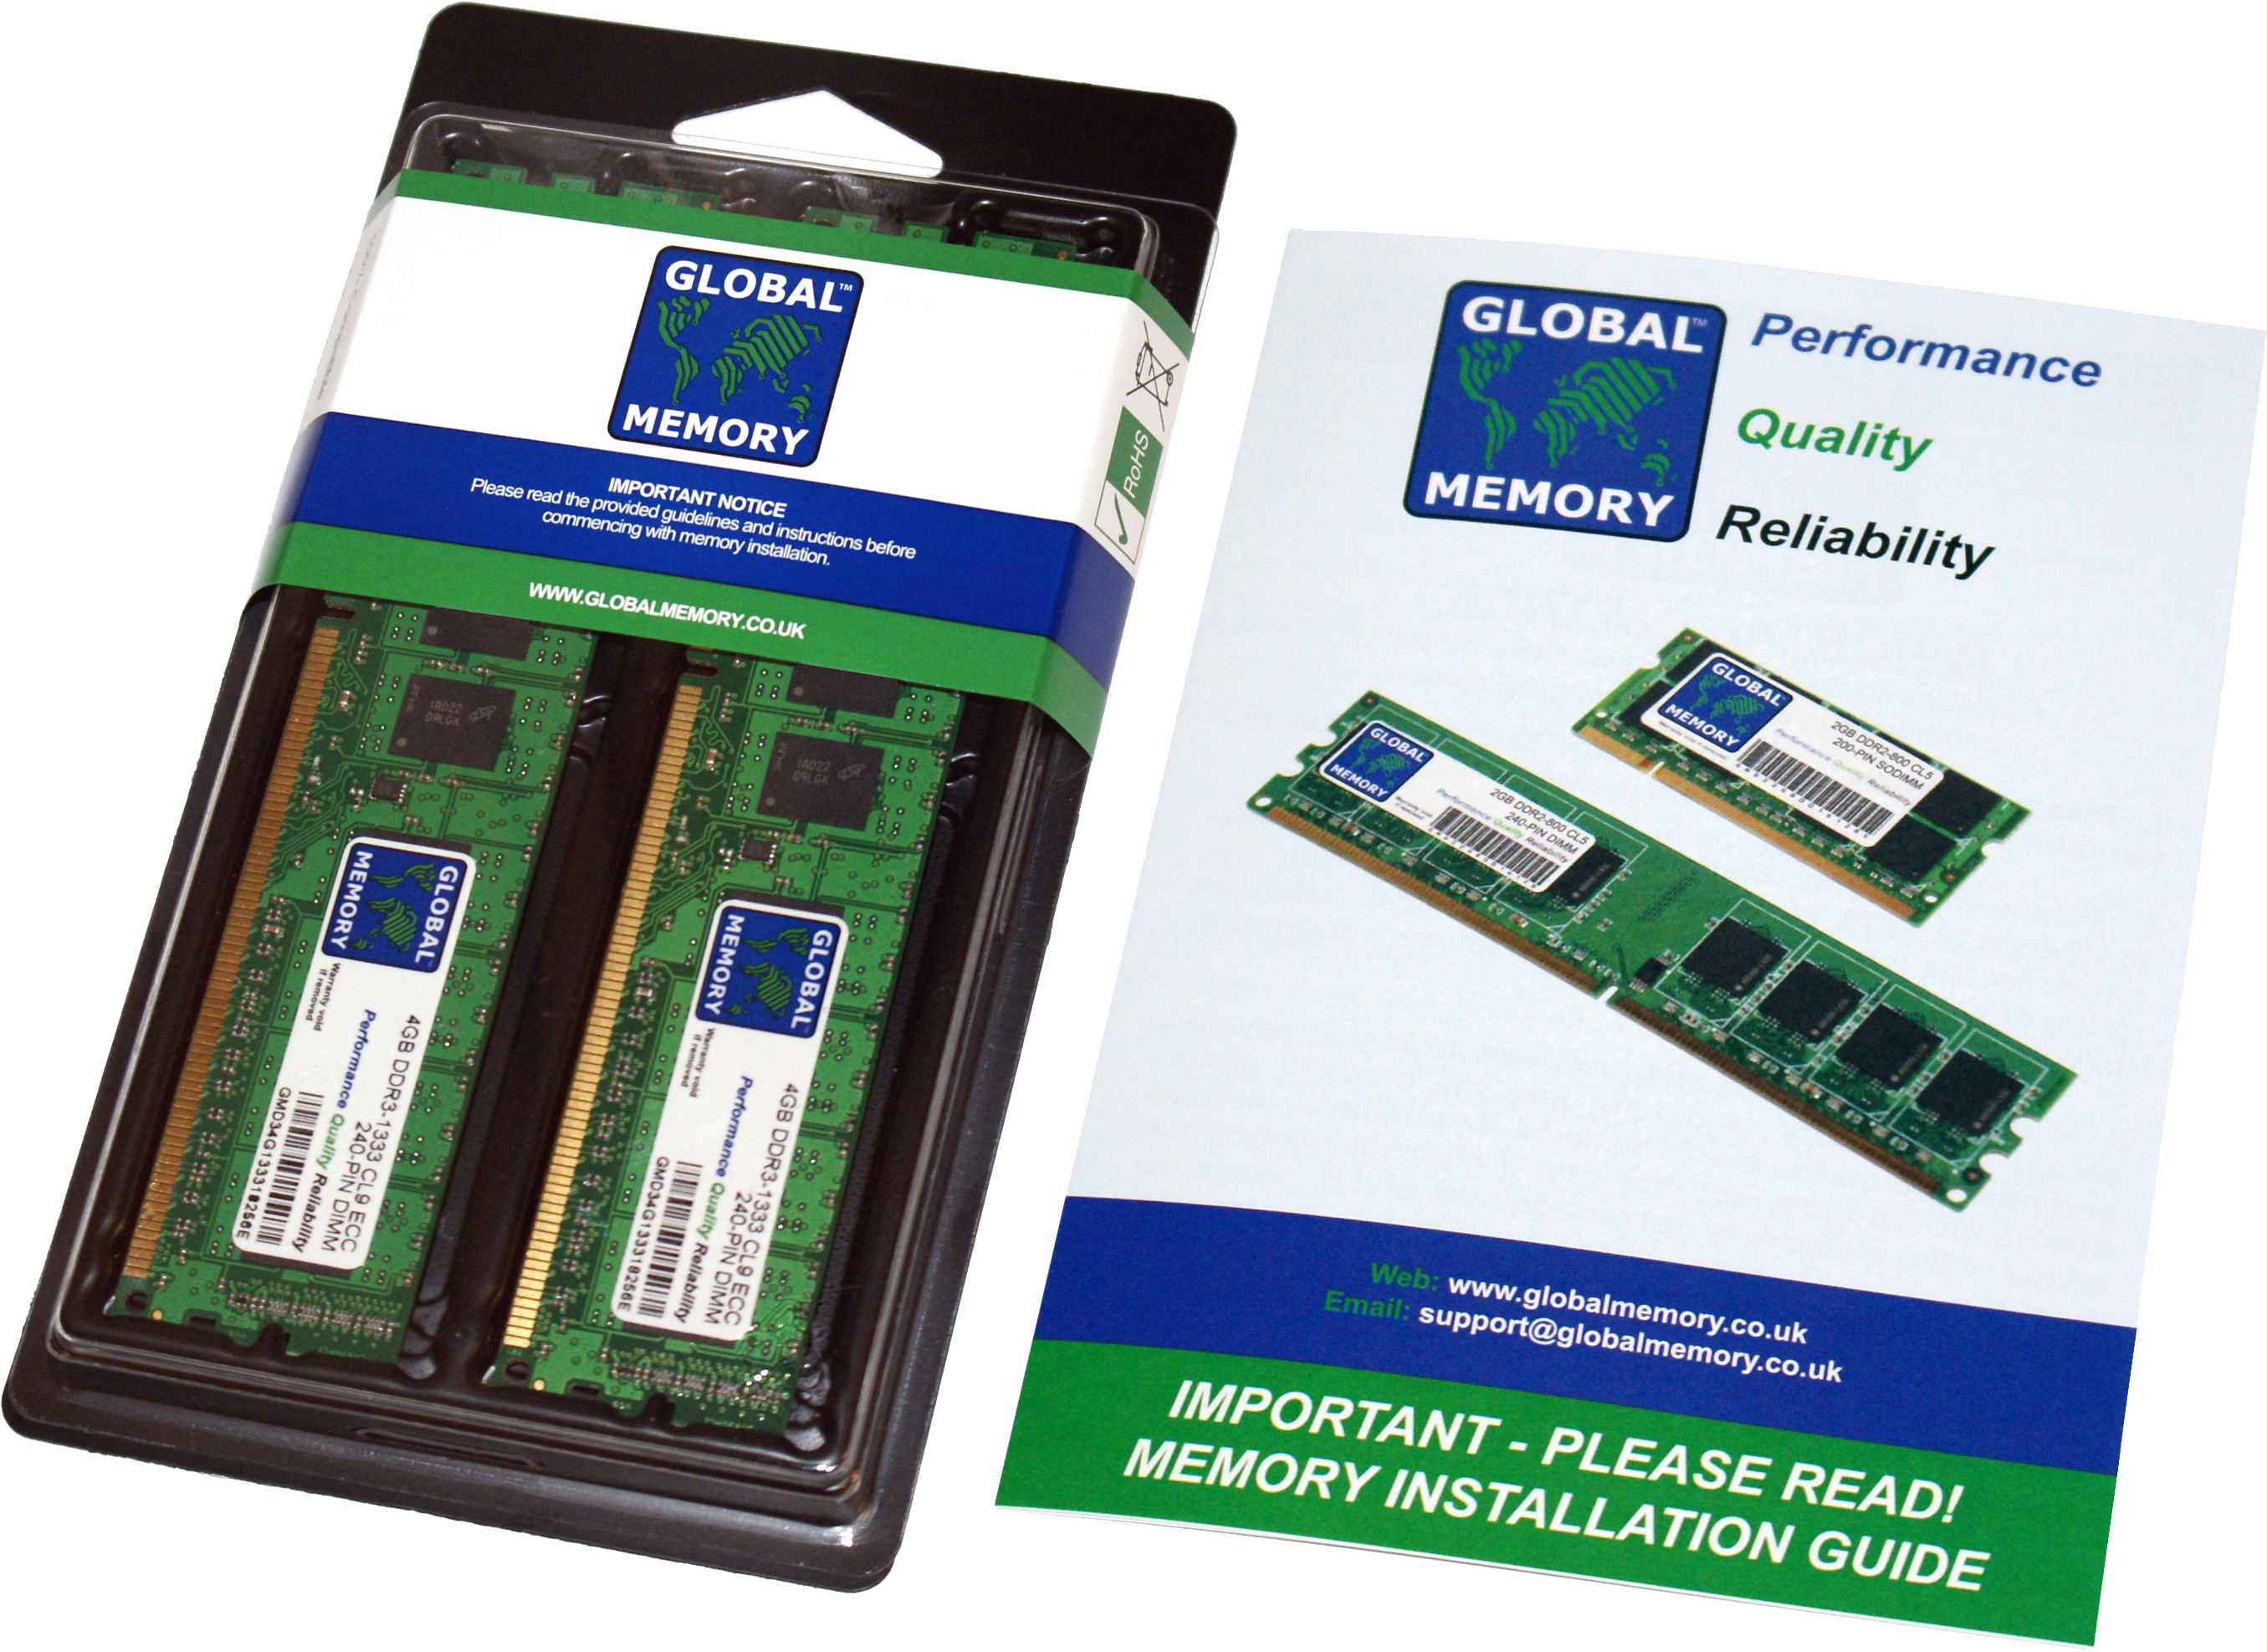 16GB (2 x 8GB) DDR3 1866MHz PC3-14900 240-PIN ECC DIMM (UDIMM) MEMORY RAM KIT FOR HEWLETT-PACKARD SERVERS/WORKSTATIONS